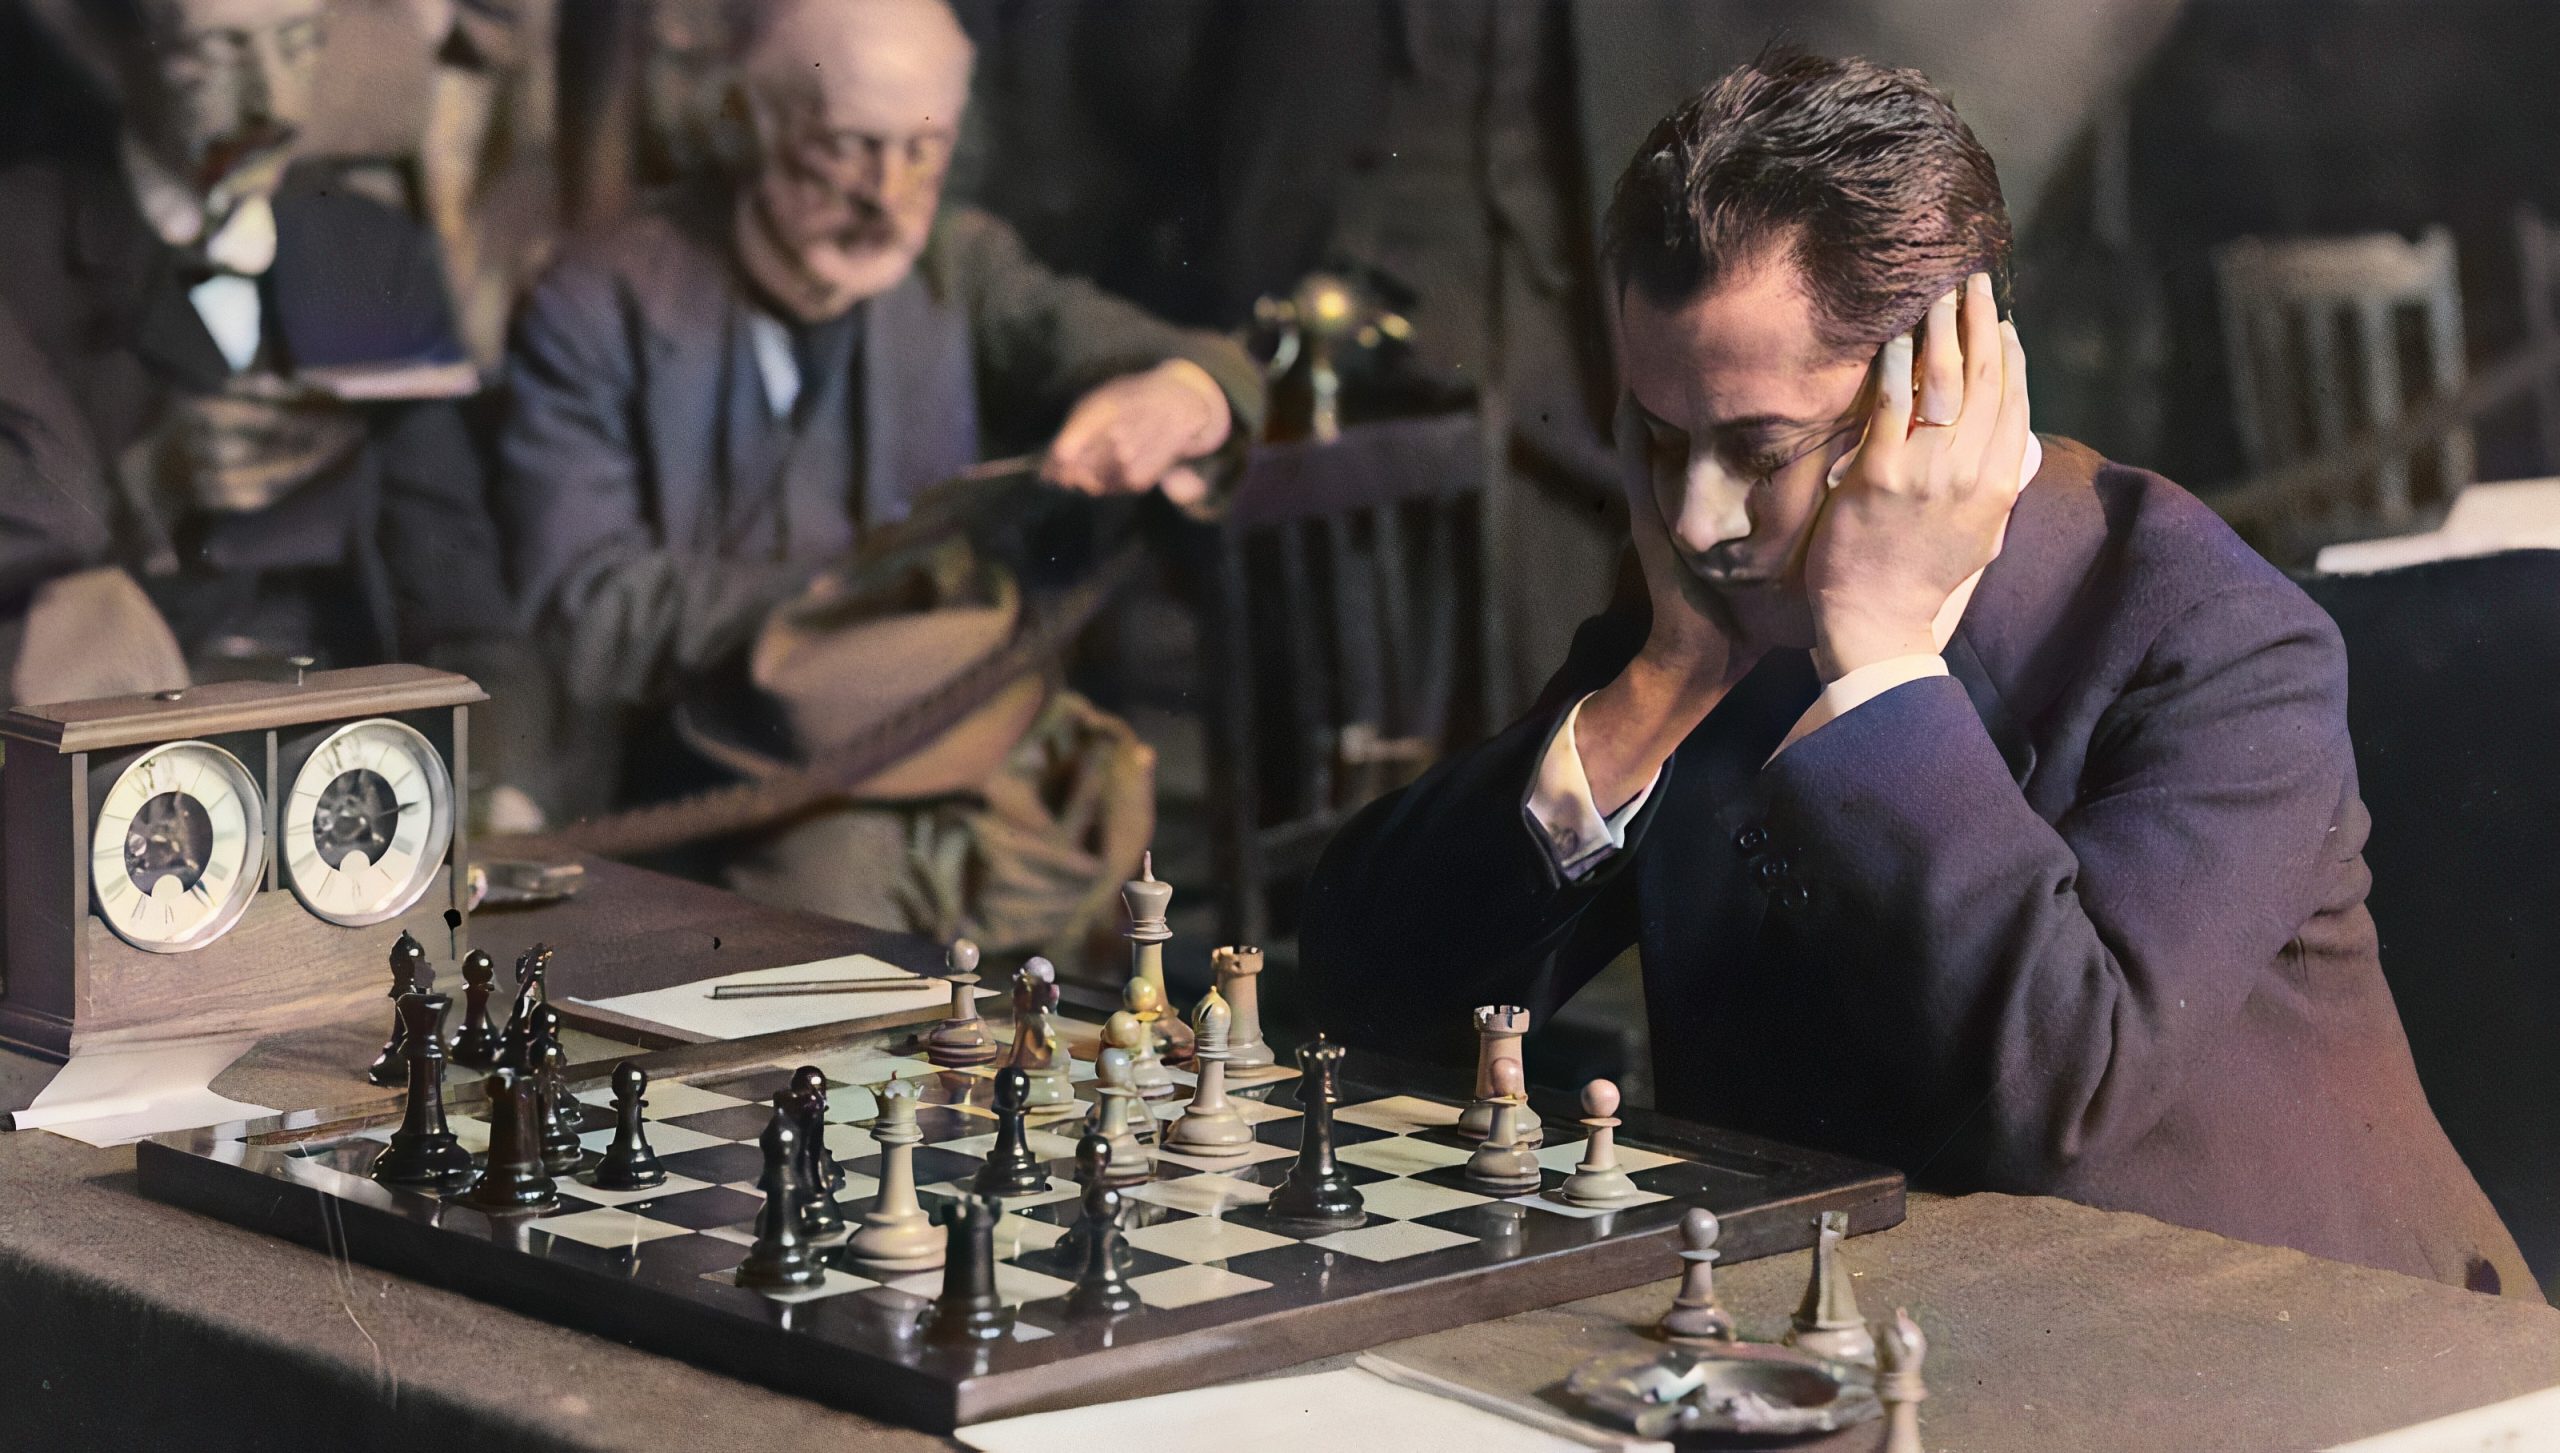 Советская машина шахматы. Хосе Рауль Капабланка шахматист. Хосе Рауль Капабланка и Алехин.